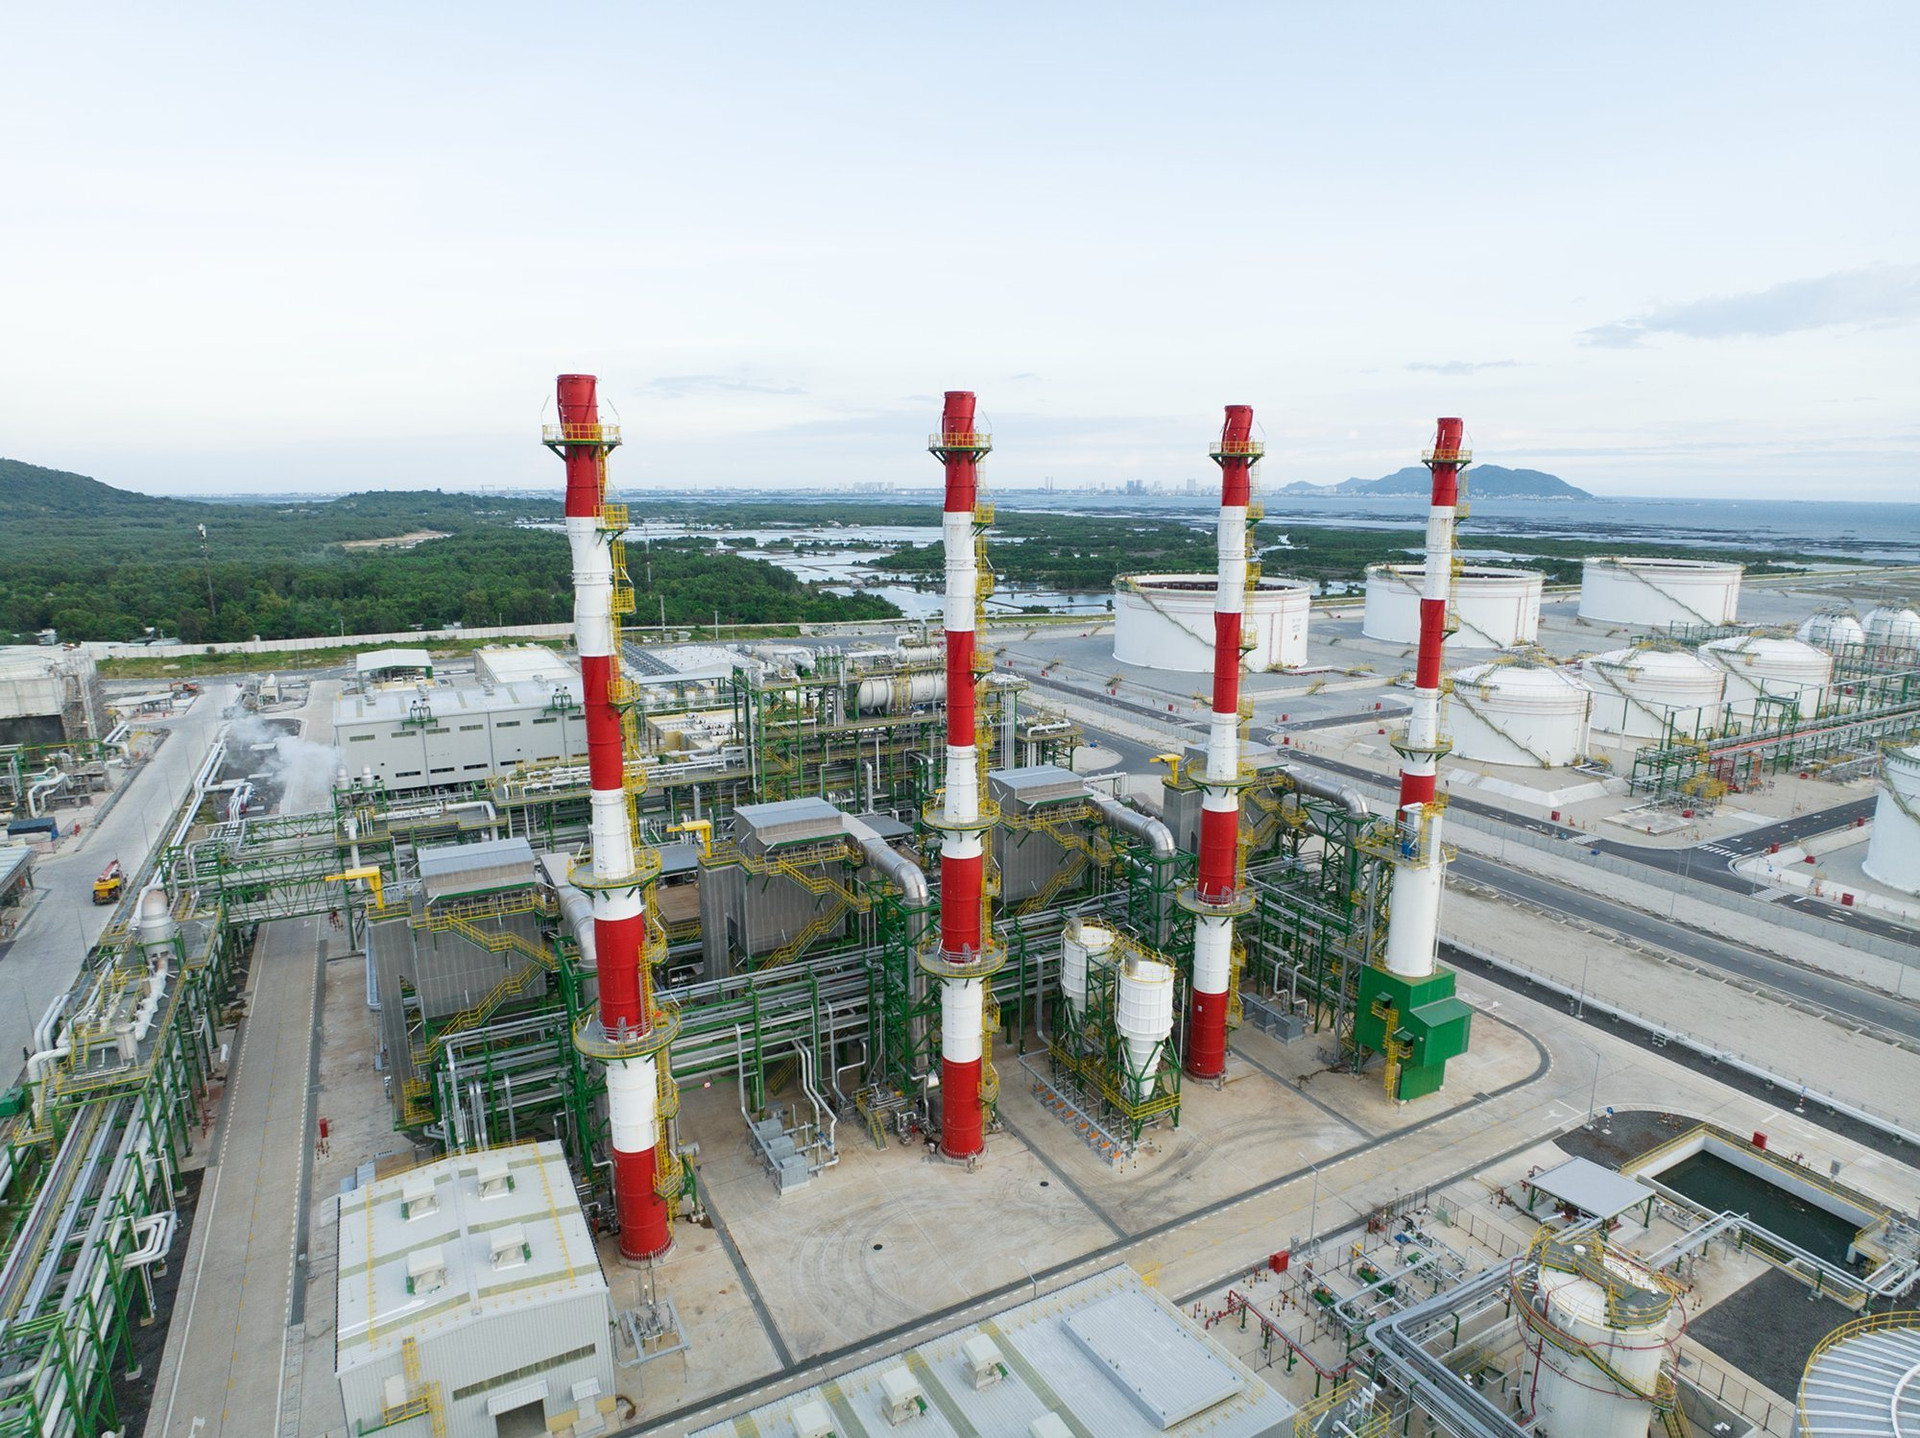 Dự án Long Sơn của SCG chính thức đi vào hoạt động: Vốn đầu tư hơn 5 tỷ USD. là tổ hợp hóa dầu tích hợp đầy đủ đầu tiên tại Việt Nam